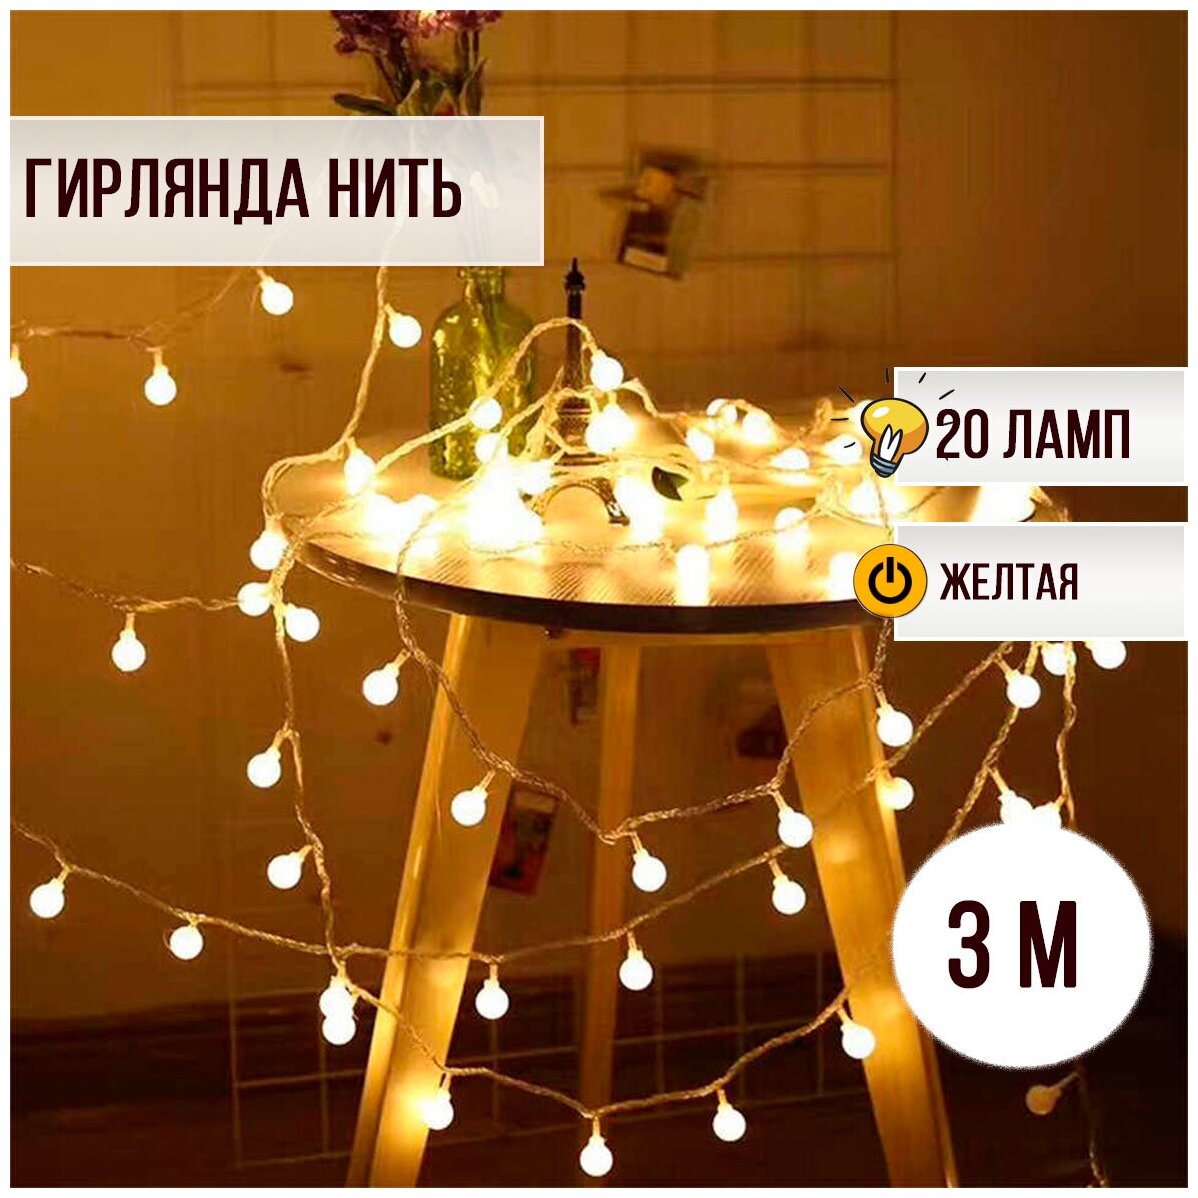 Гирлянда новогодняя Шарики 20 ламп 3 м желтый